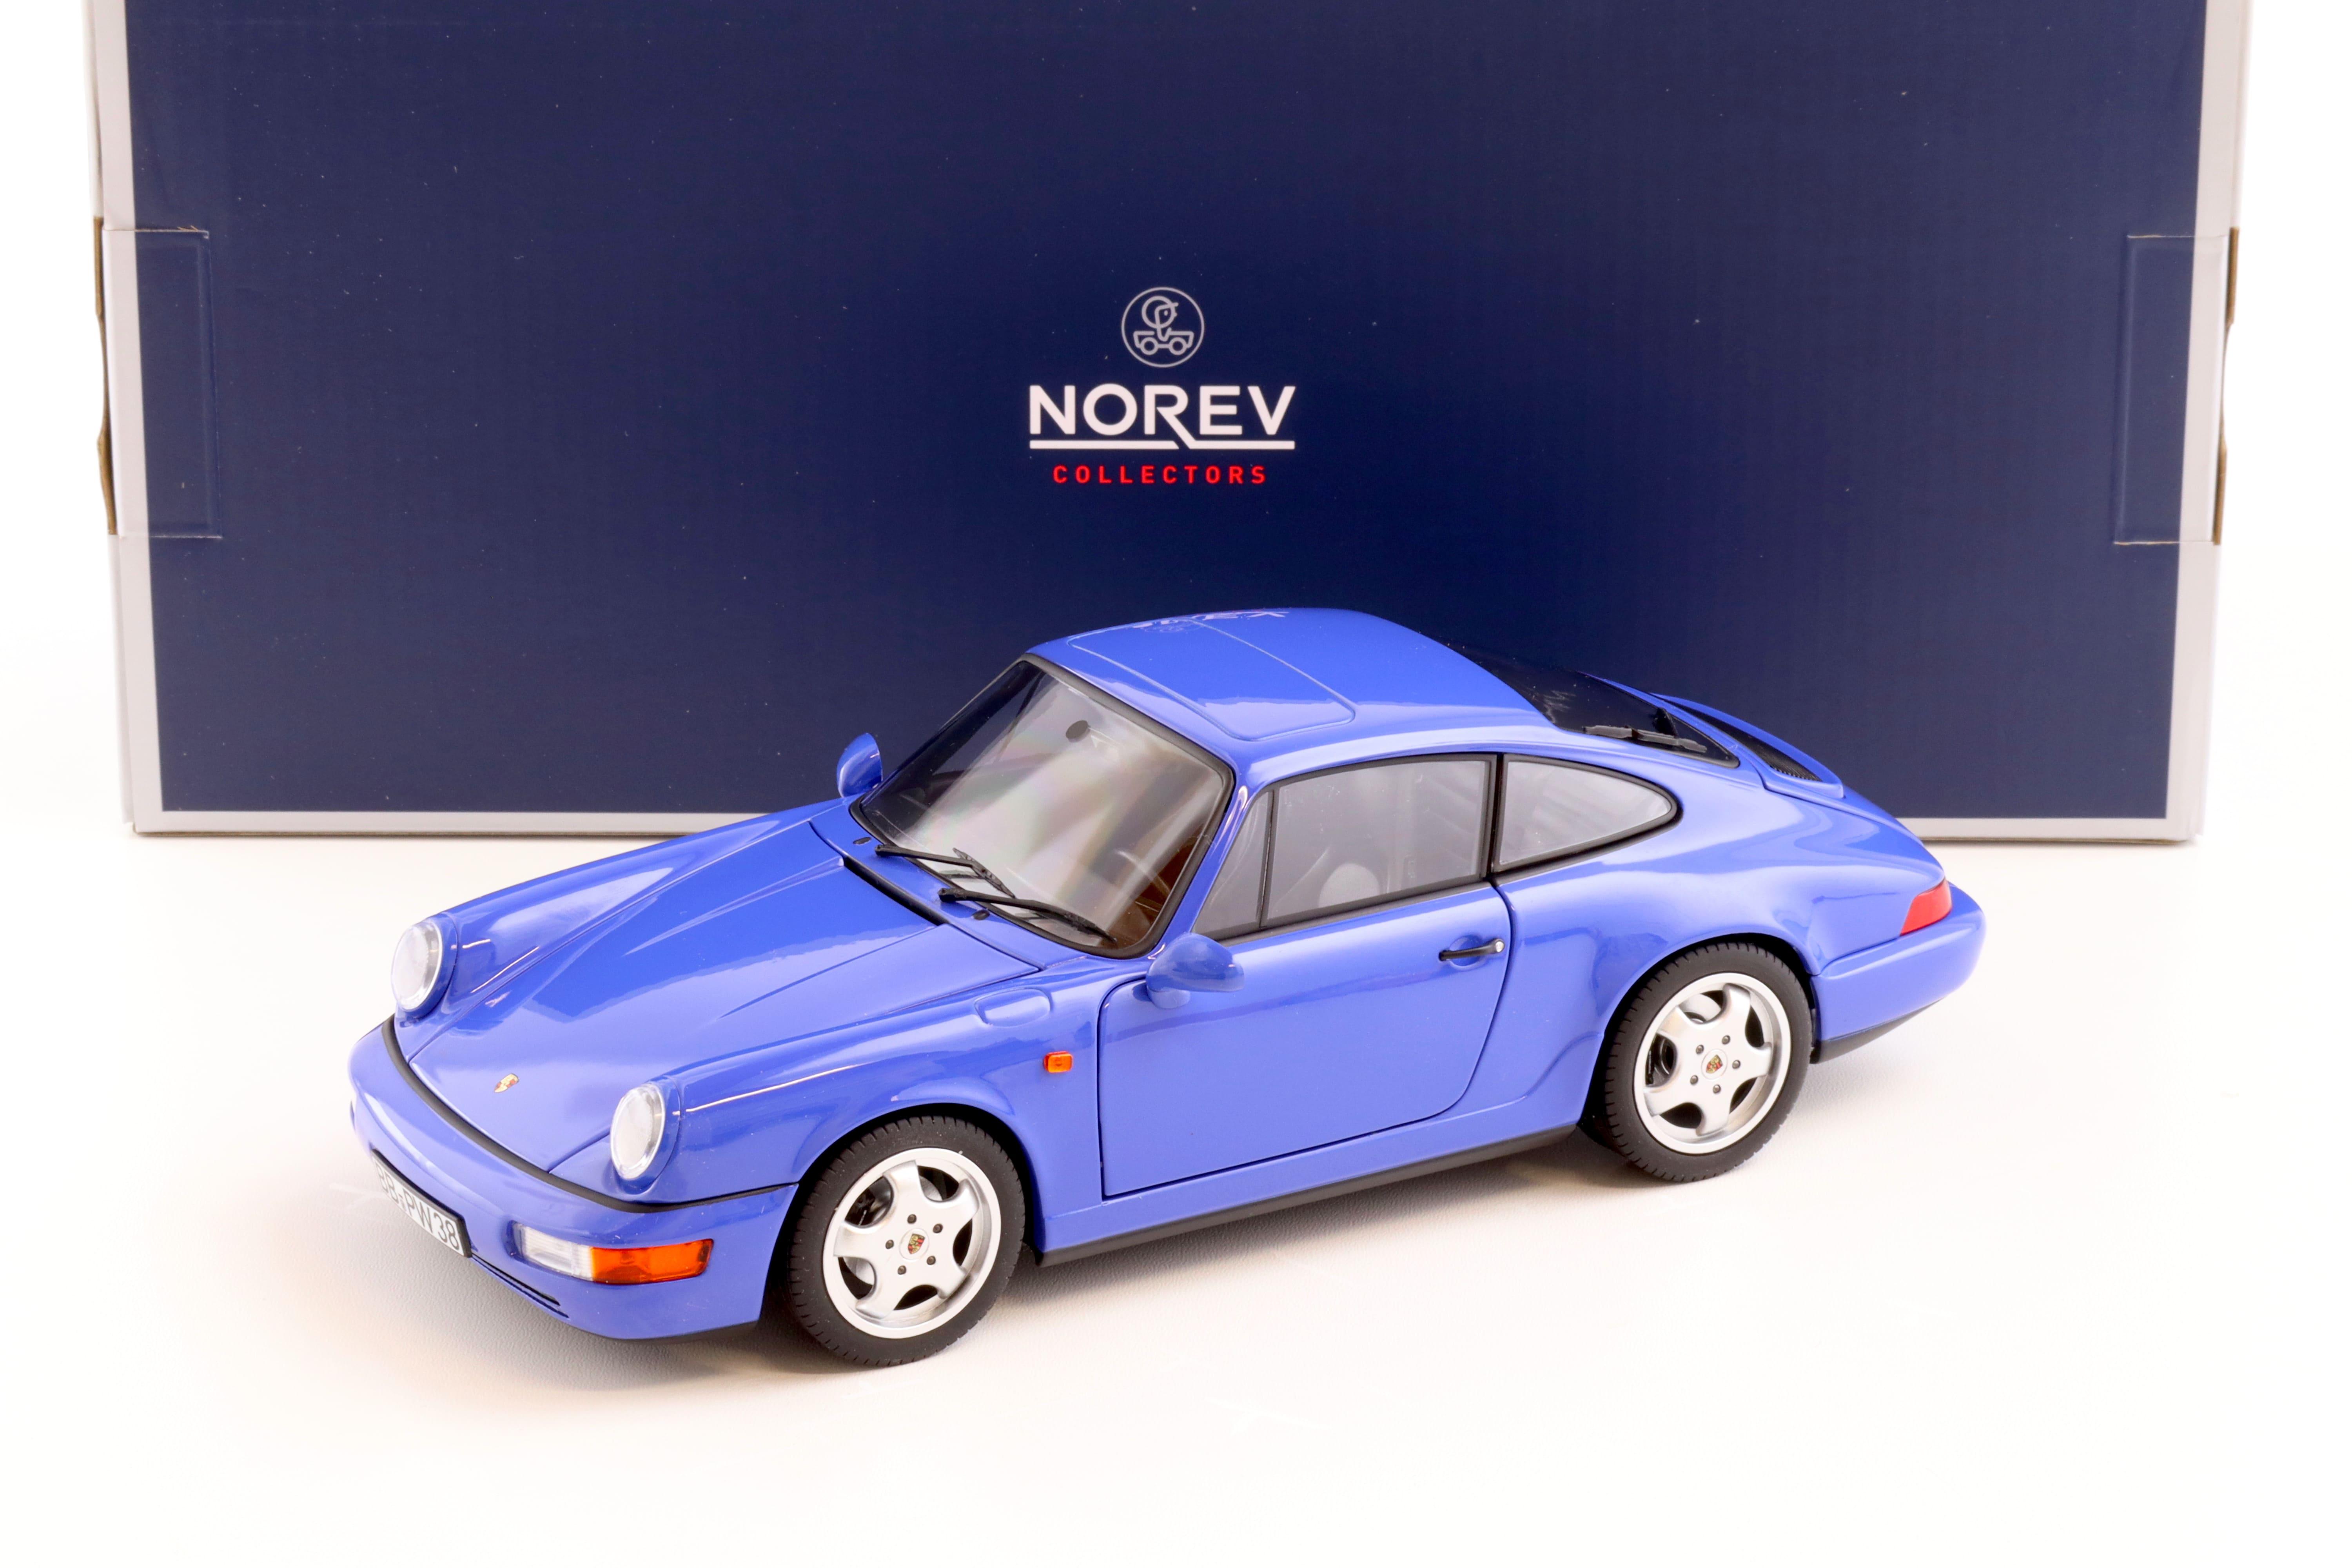 1:18 Norev Porsche 911 (992) GT3 Coupe Kreide 2021 - Limited 504 pcs.